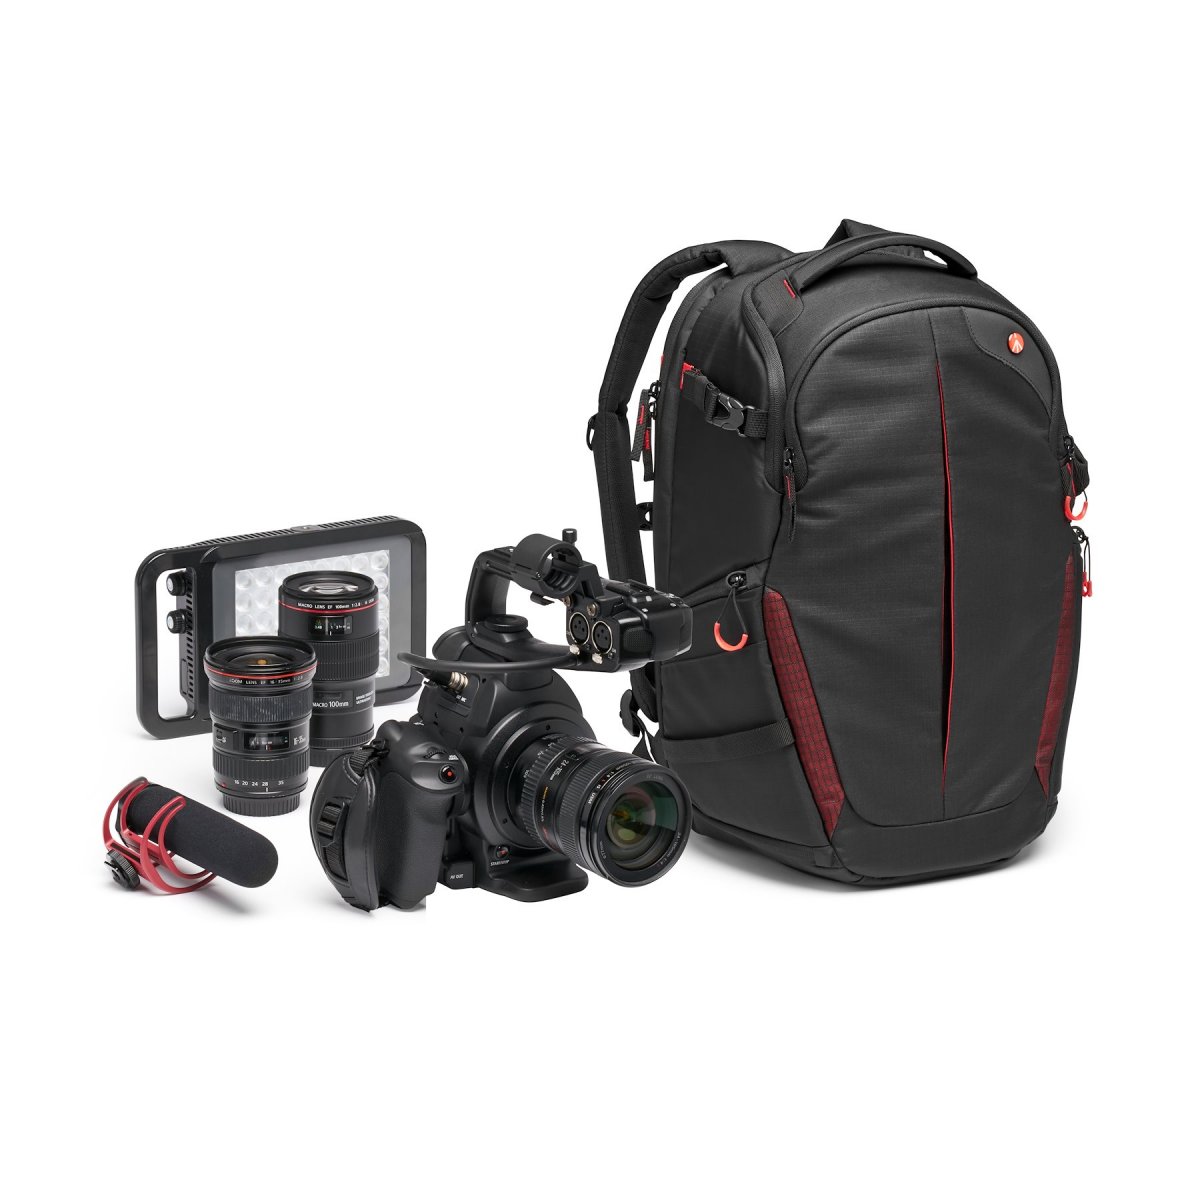 Fotobatoh Manfrotto Pro Light backpack RedBee-310 pro DSLRc nebo dron DJI Mavic series s vybavením